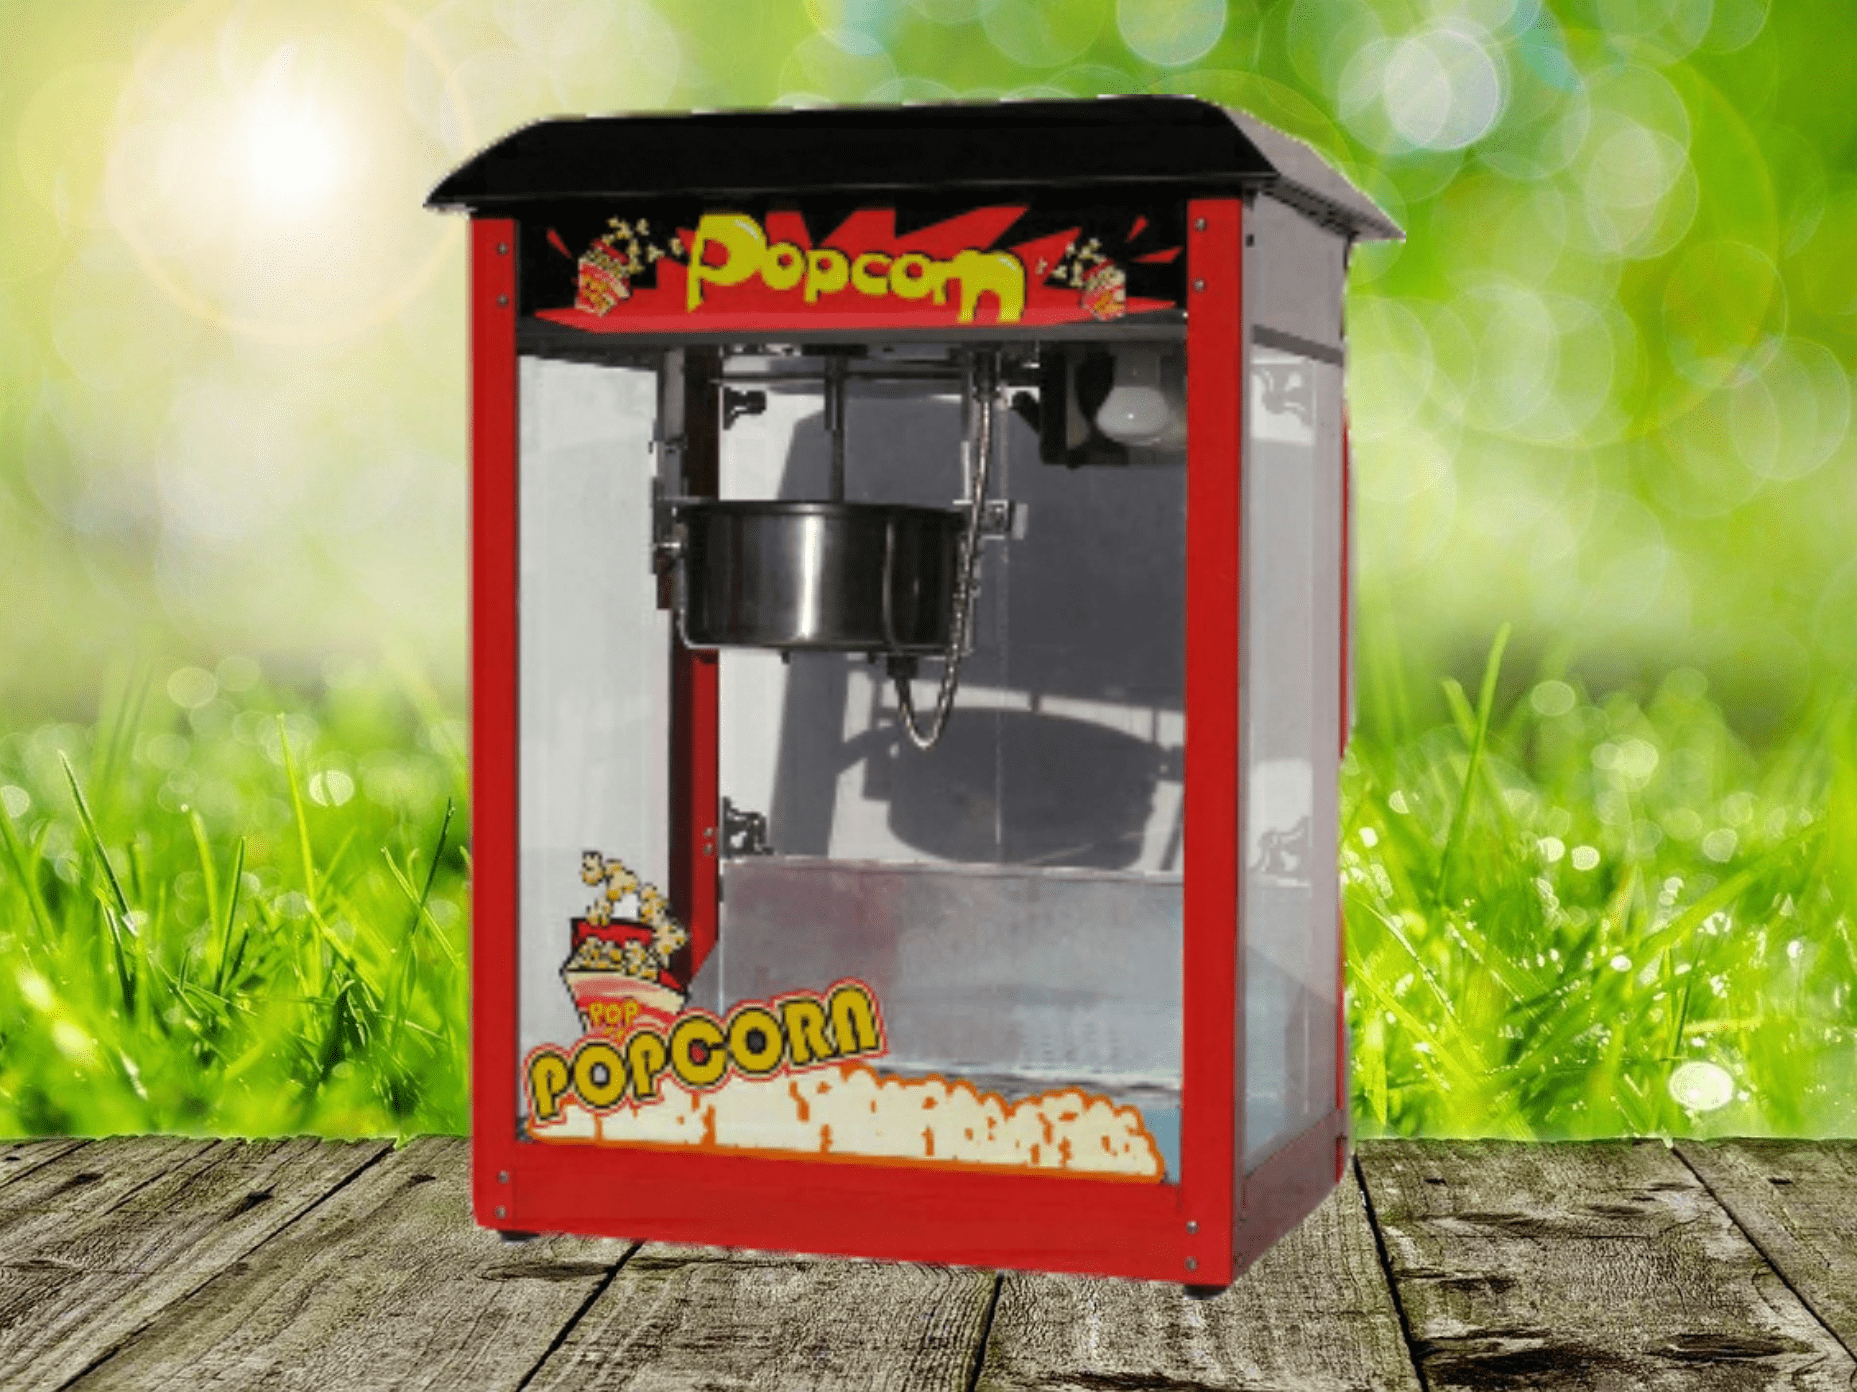 Popcornmaschine Popcorn selbst machen mieten Eventverleih Fun Food Spassfabrik Funfood